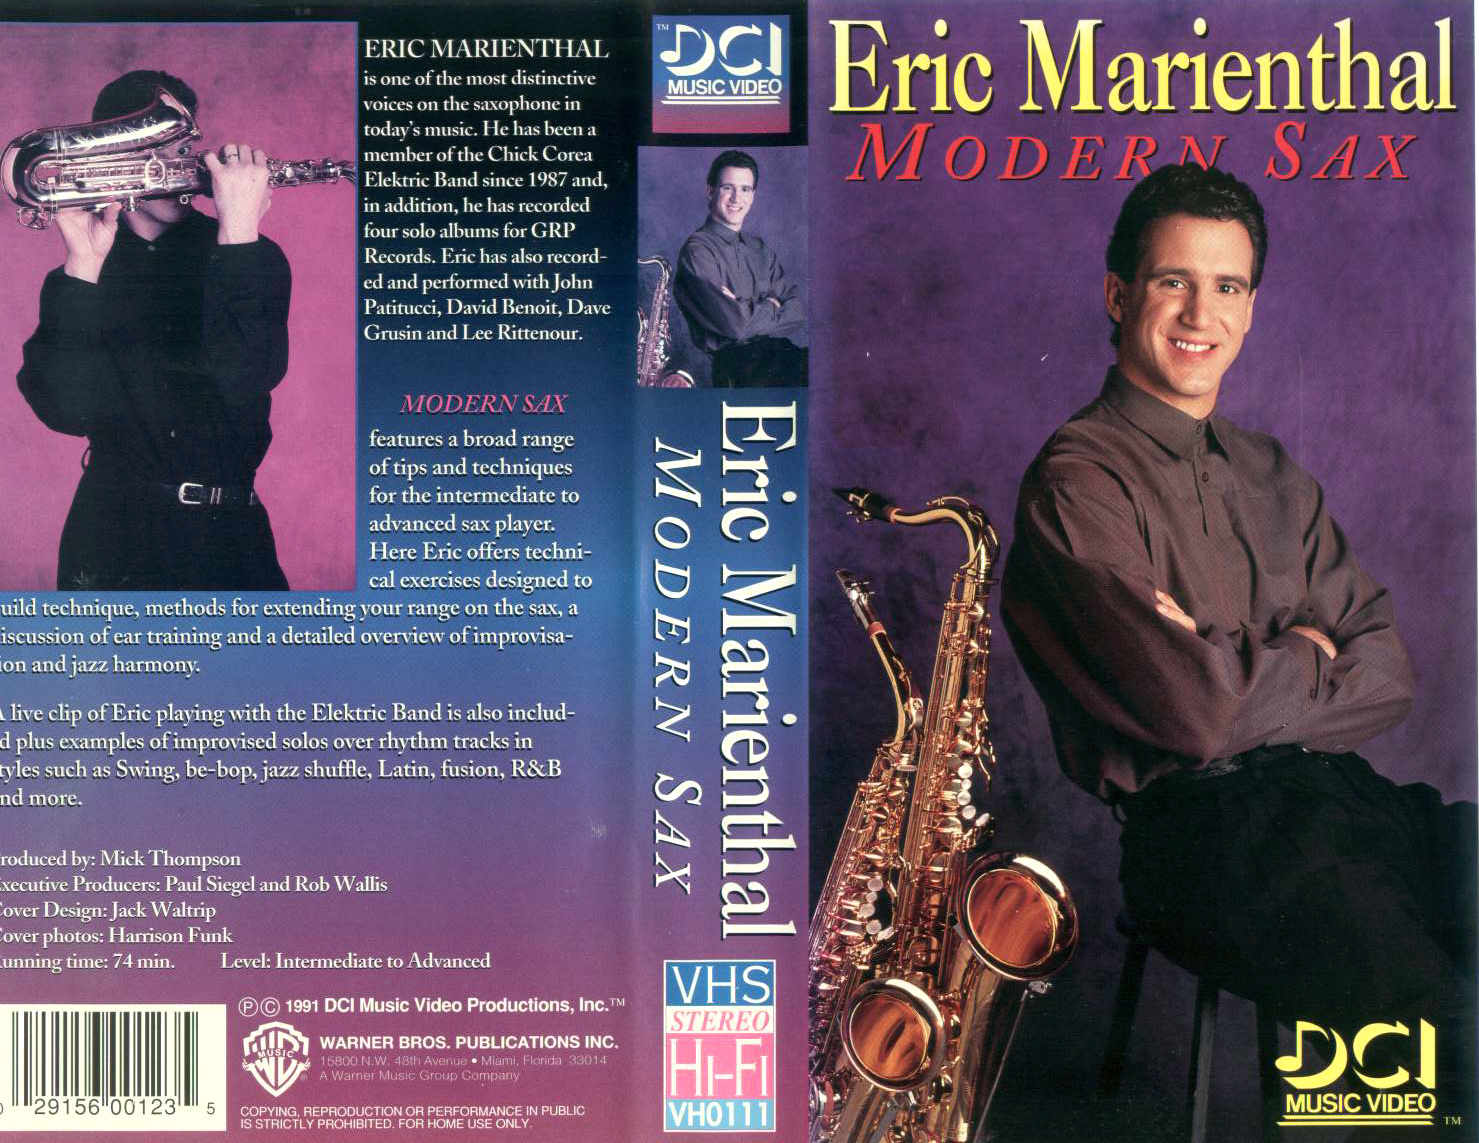 E. Marienthal / Modern Sax - videocassetta VHS